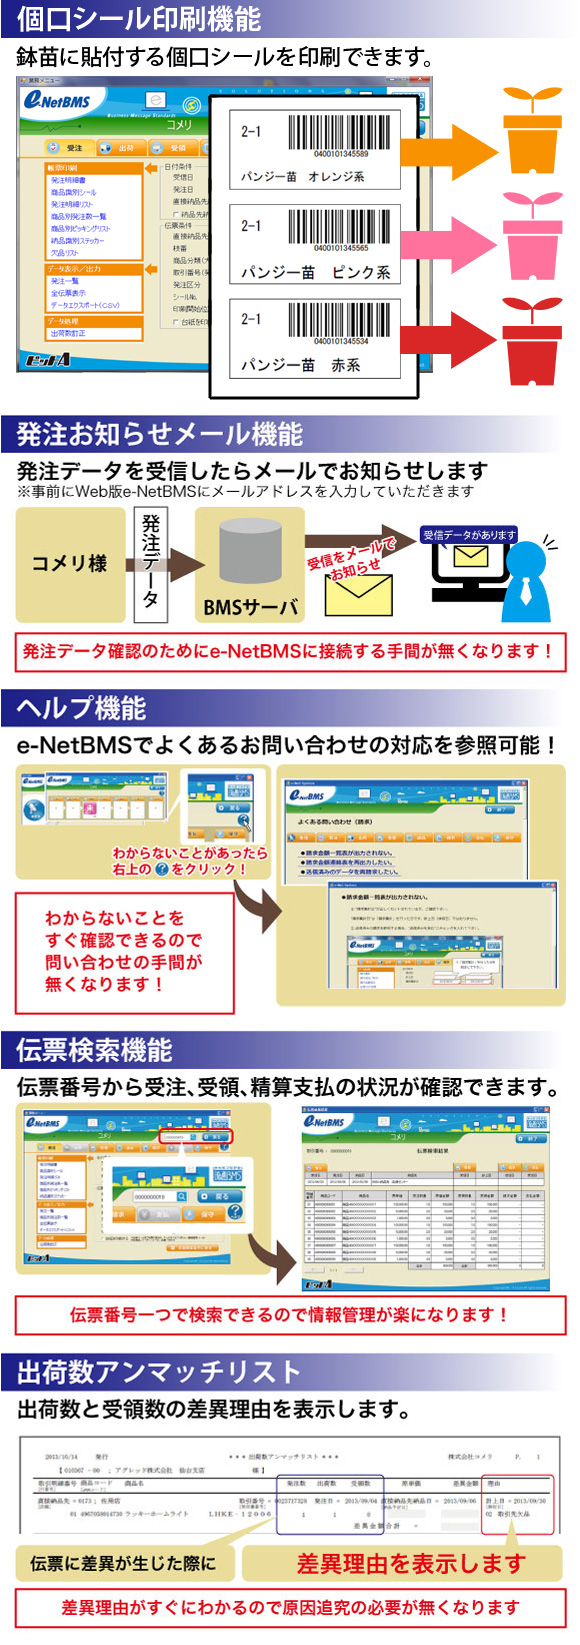 e-NetBMSの機能